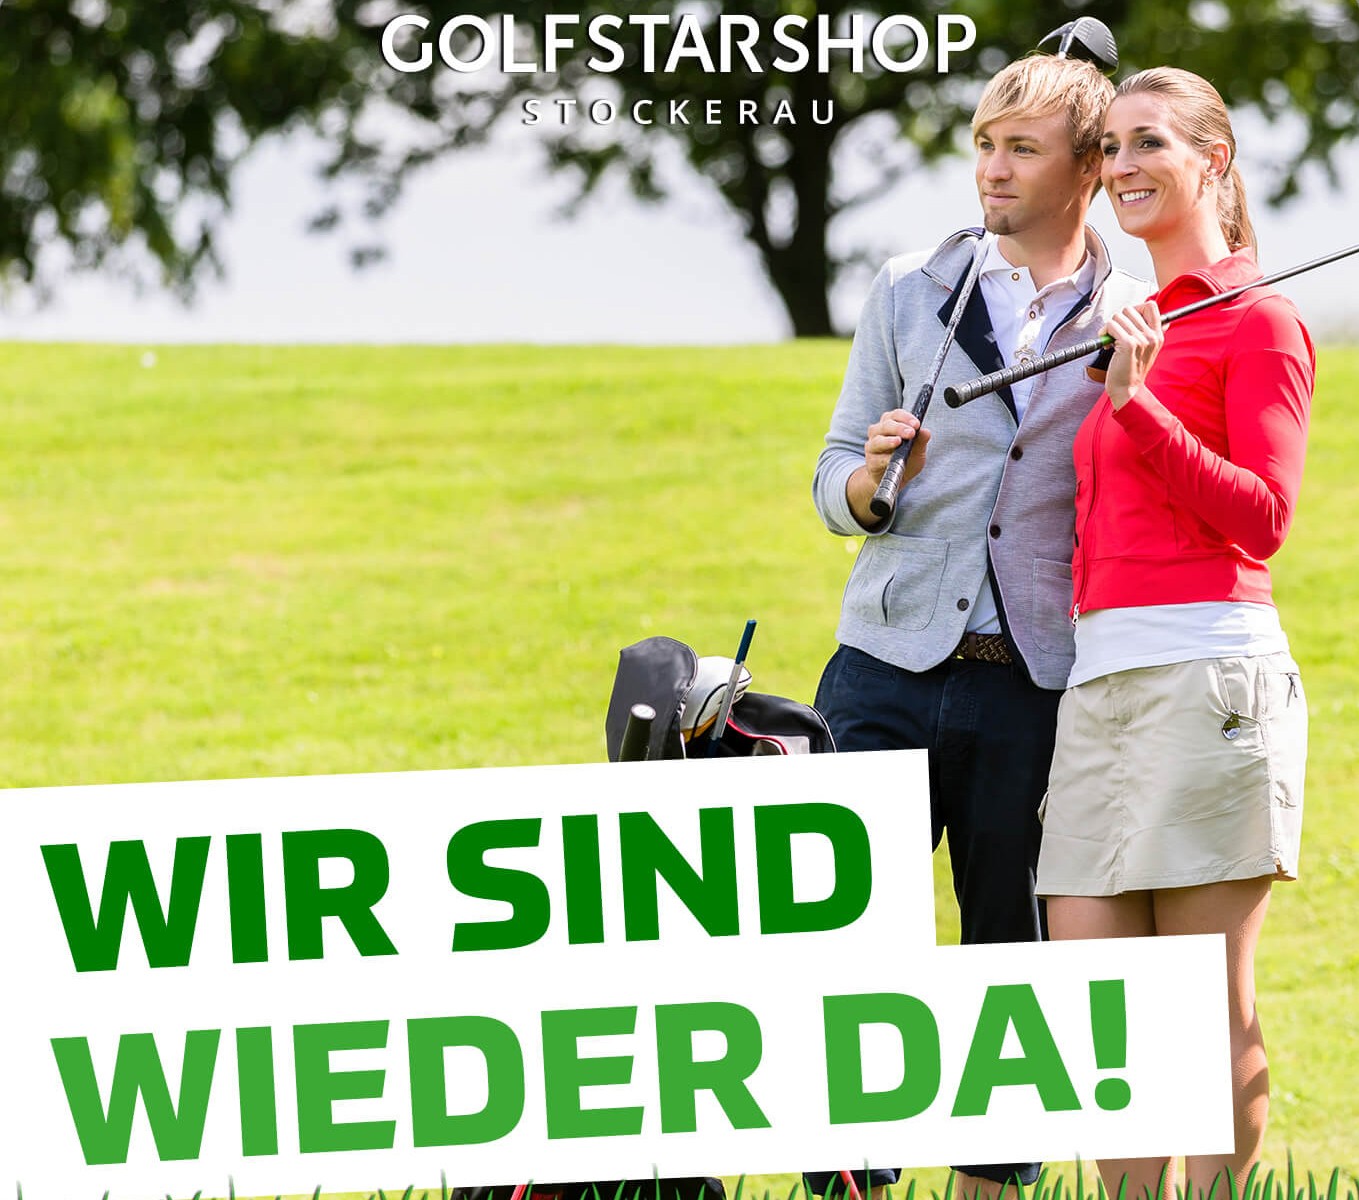 Golf Star Shop Stockerau: Eröffnung light ab 18. April